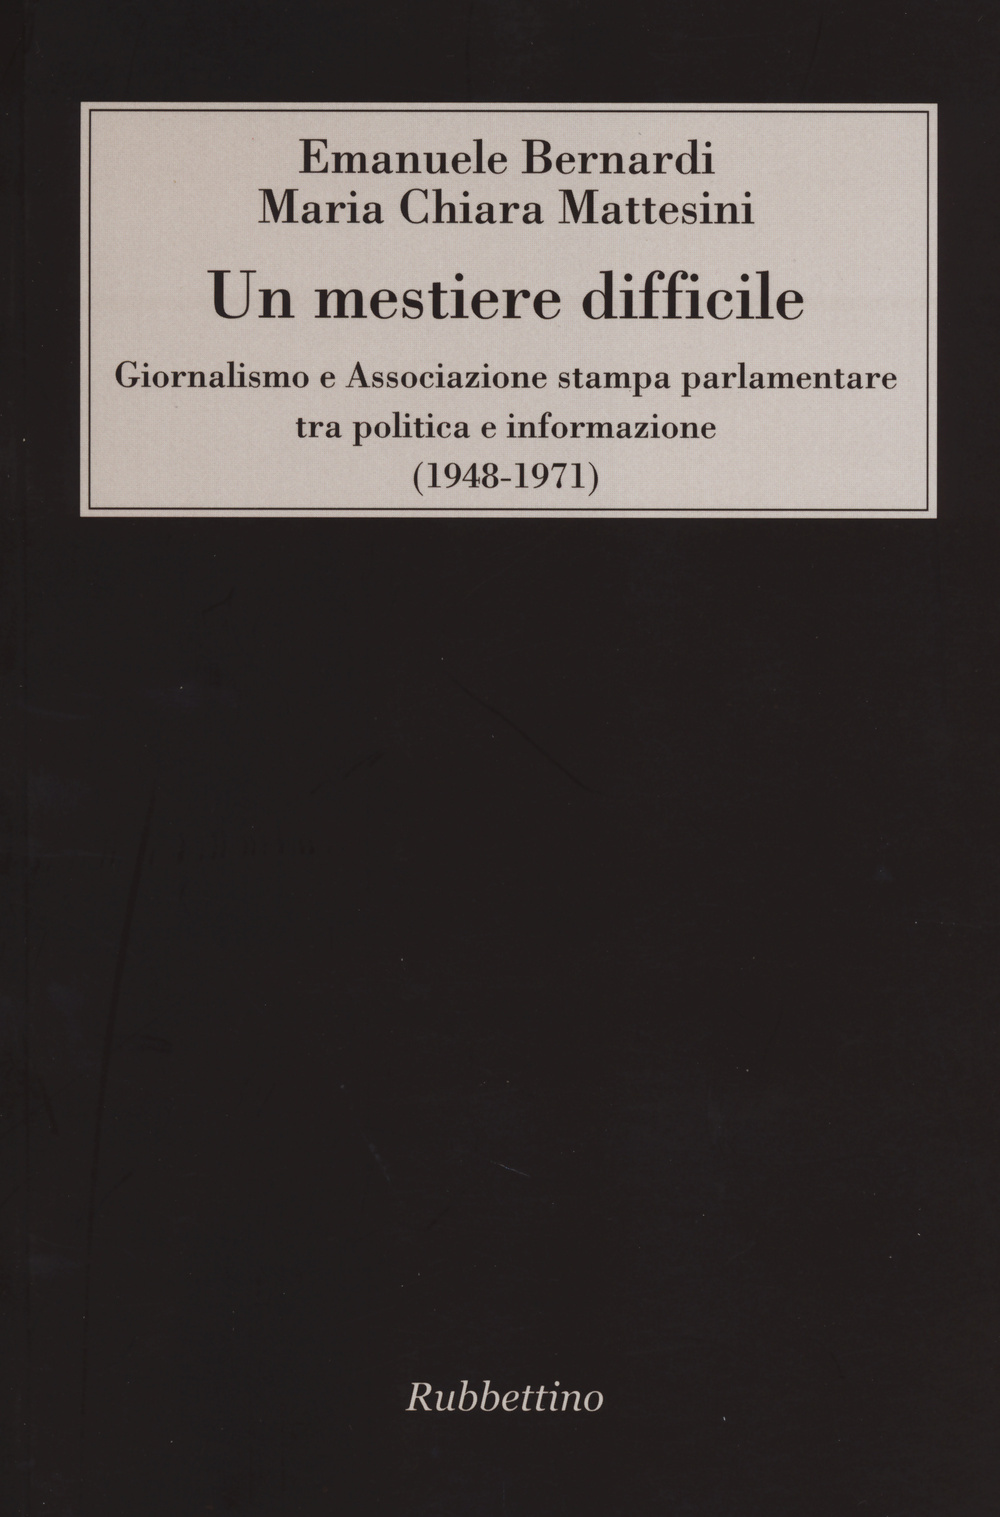 Un mestiere difficile. Giornalismo e Associazione stampa parlamentare tra politica e informazione (1948-1971)